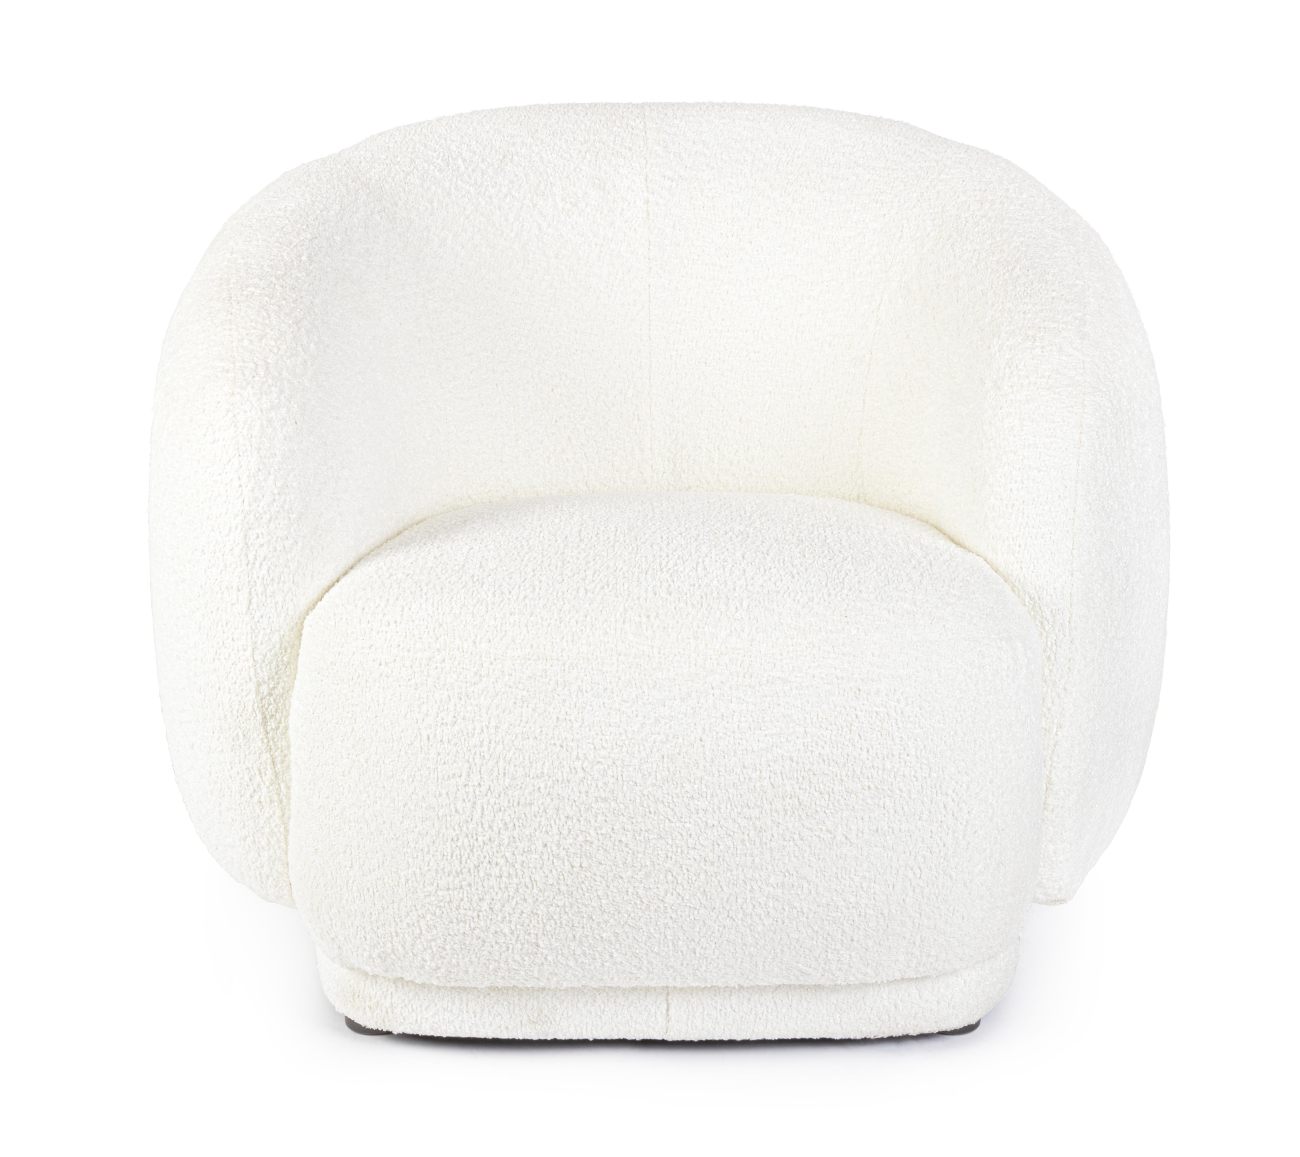 Der Sessel Tecla überzeugt mit seinem modernen Stil. Gefertigt wurde er aus Boucle-Stoff, welcher einen weißen Farbton besitzt. Der Sessel besitzt eine Sitzhöhe von 43 cm.